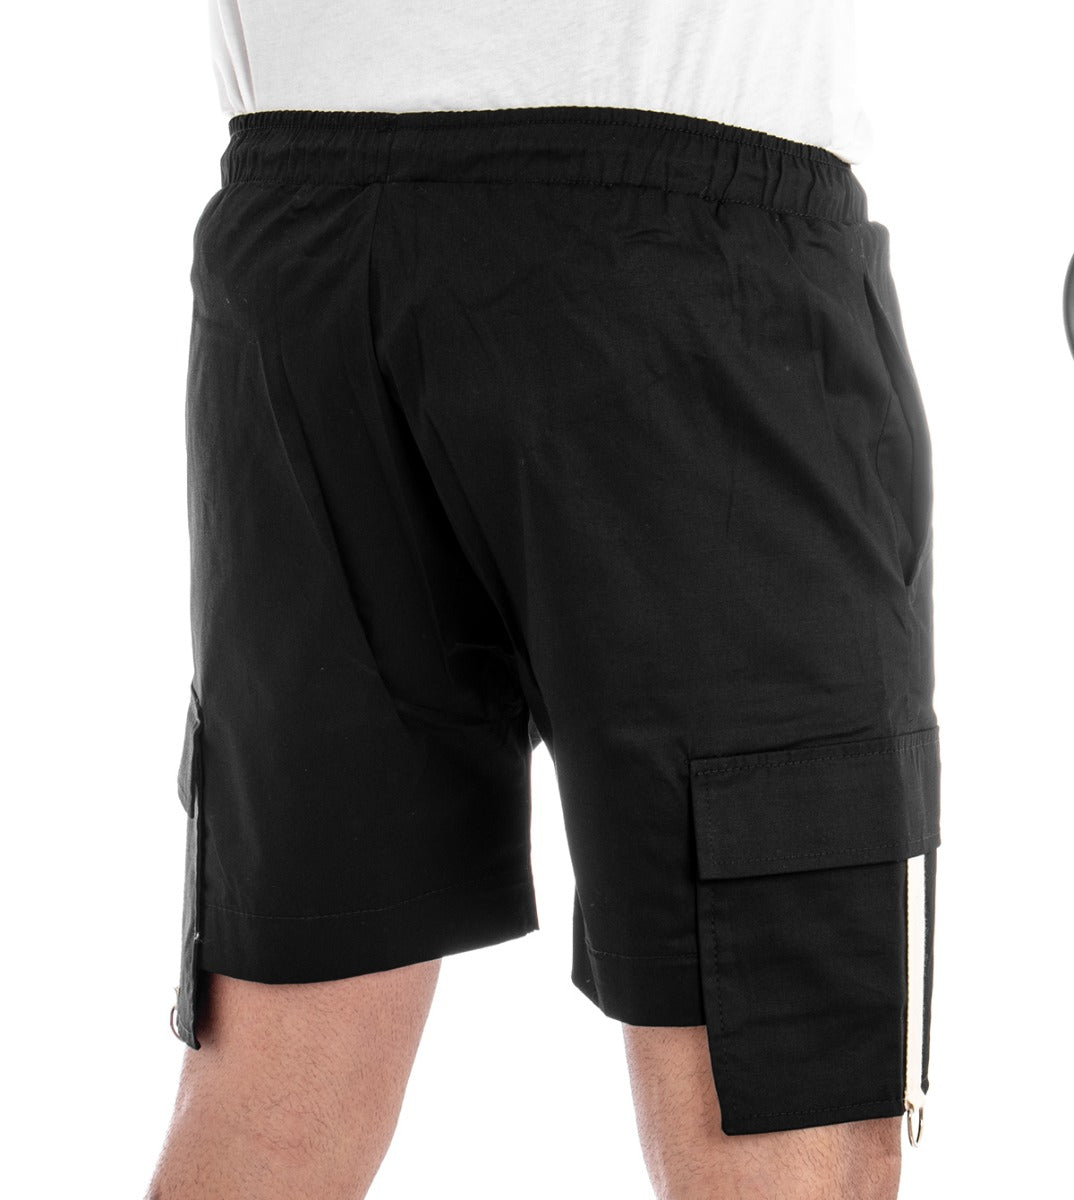 Bermuda Pantaloncino Uomo Corto Nero Elastico Pantalaccio Tasconi GIOSAL-PC1275A